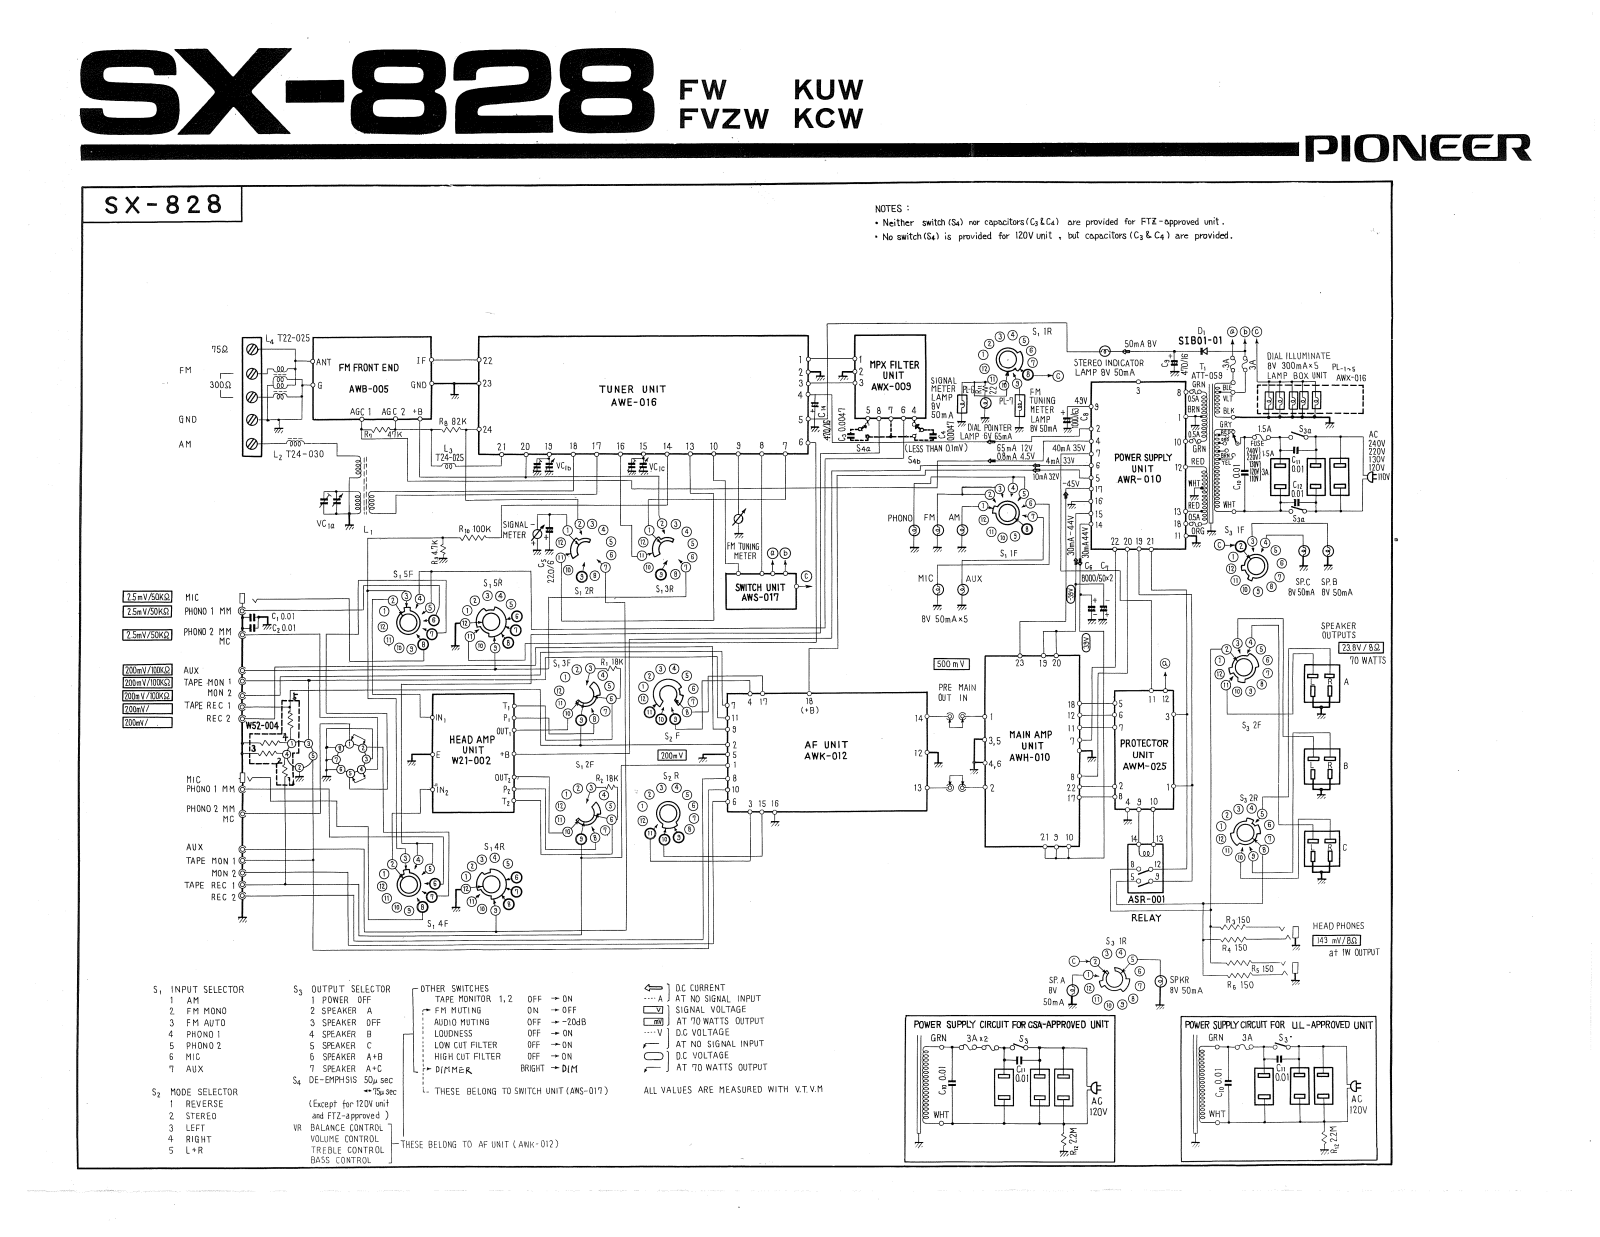 Pioneer SX-828 Schematic